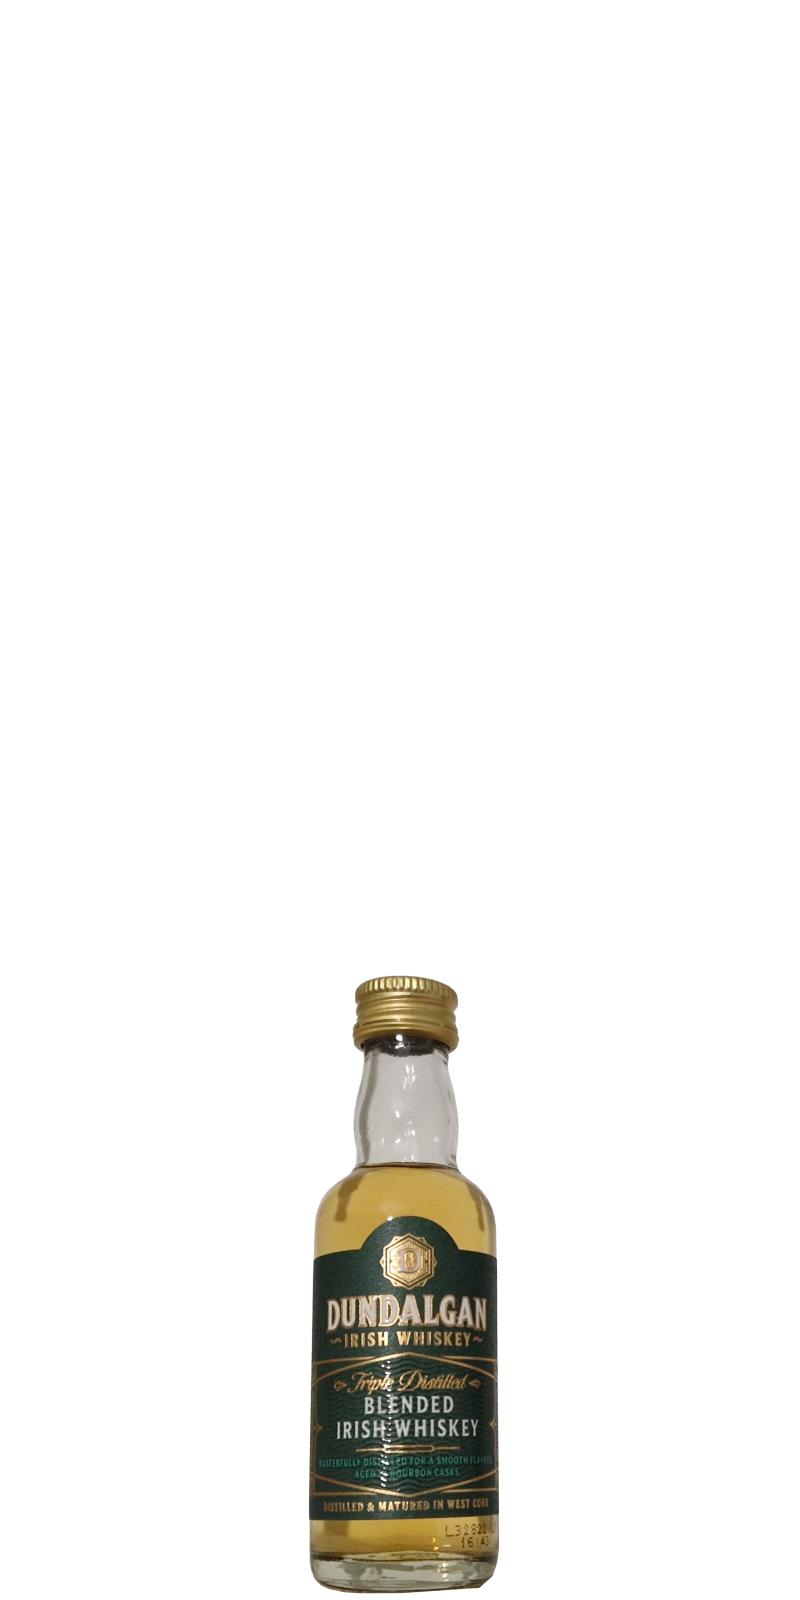 Dundalgan Blended Irish Whiskey - Ratings and reviews - Whiskybase